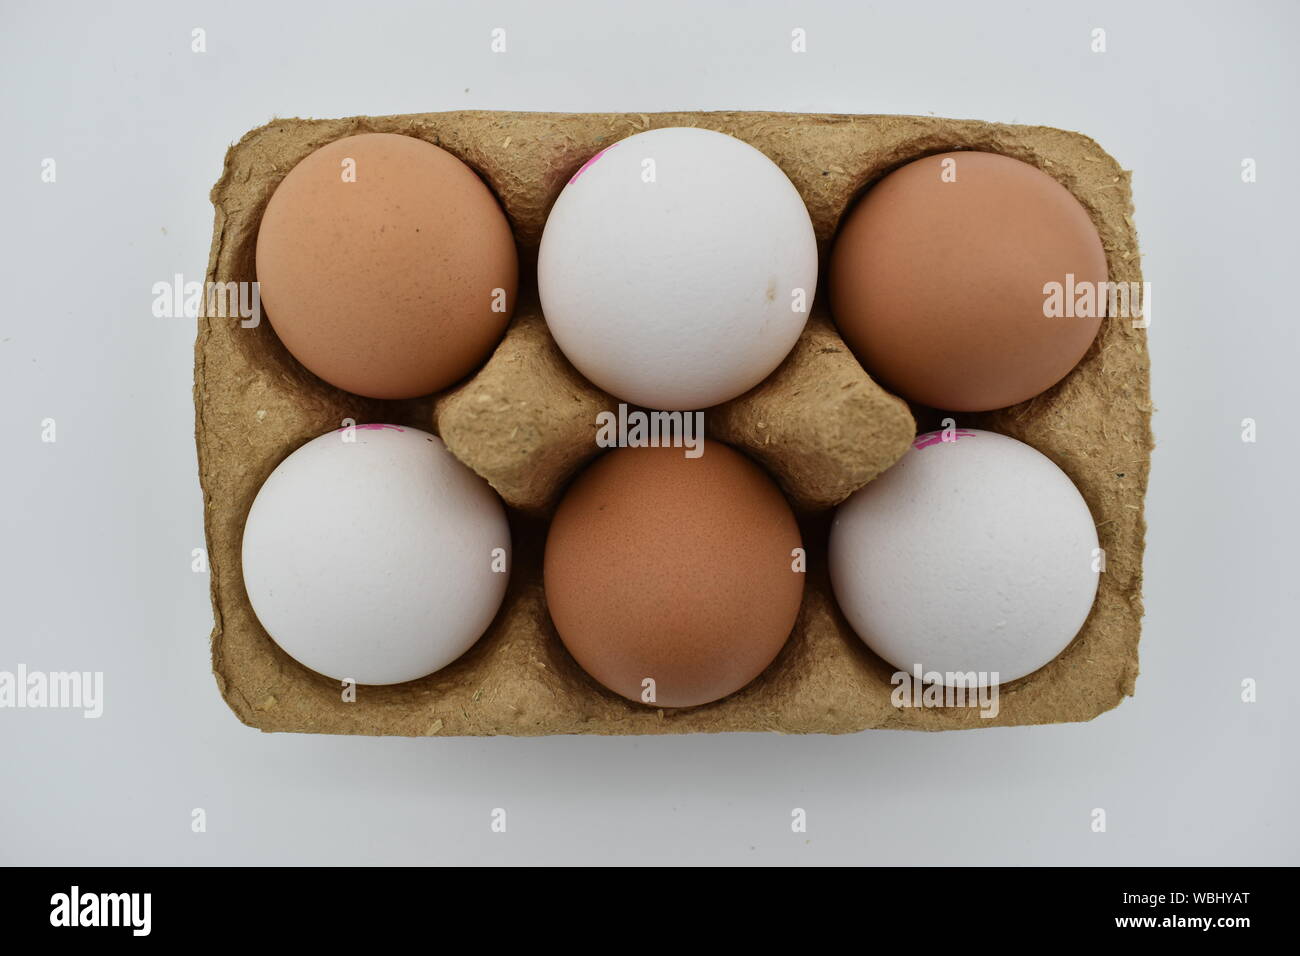 Drei weiße und drei braune Eier. Ernährungsphysiologisch nicht anders, wir werden erklärt, aber die Menschen immer noch lieber braune Eier. Stockfoto